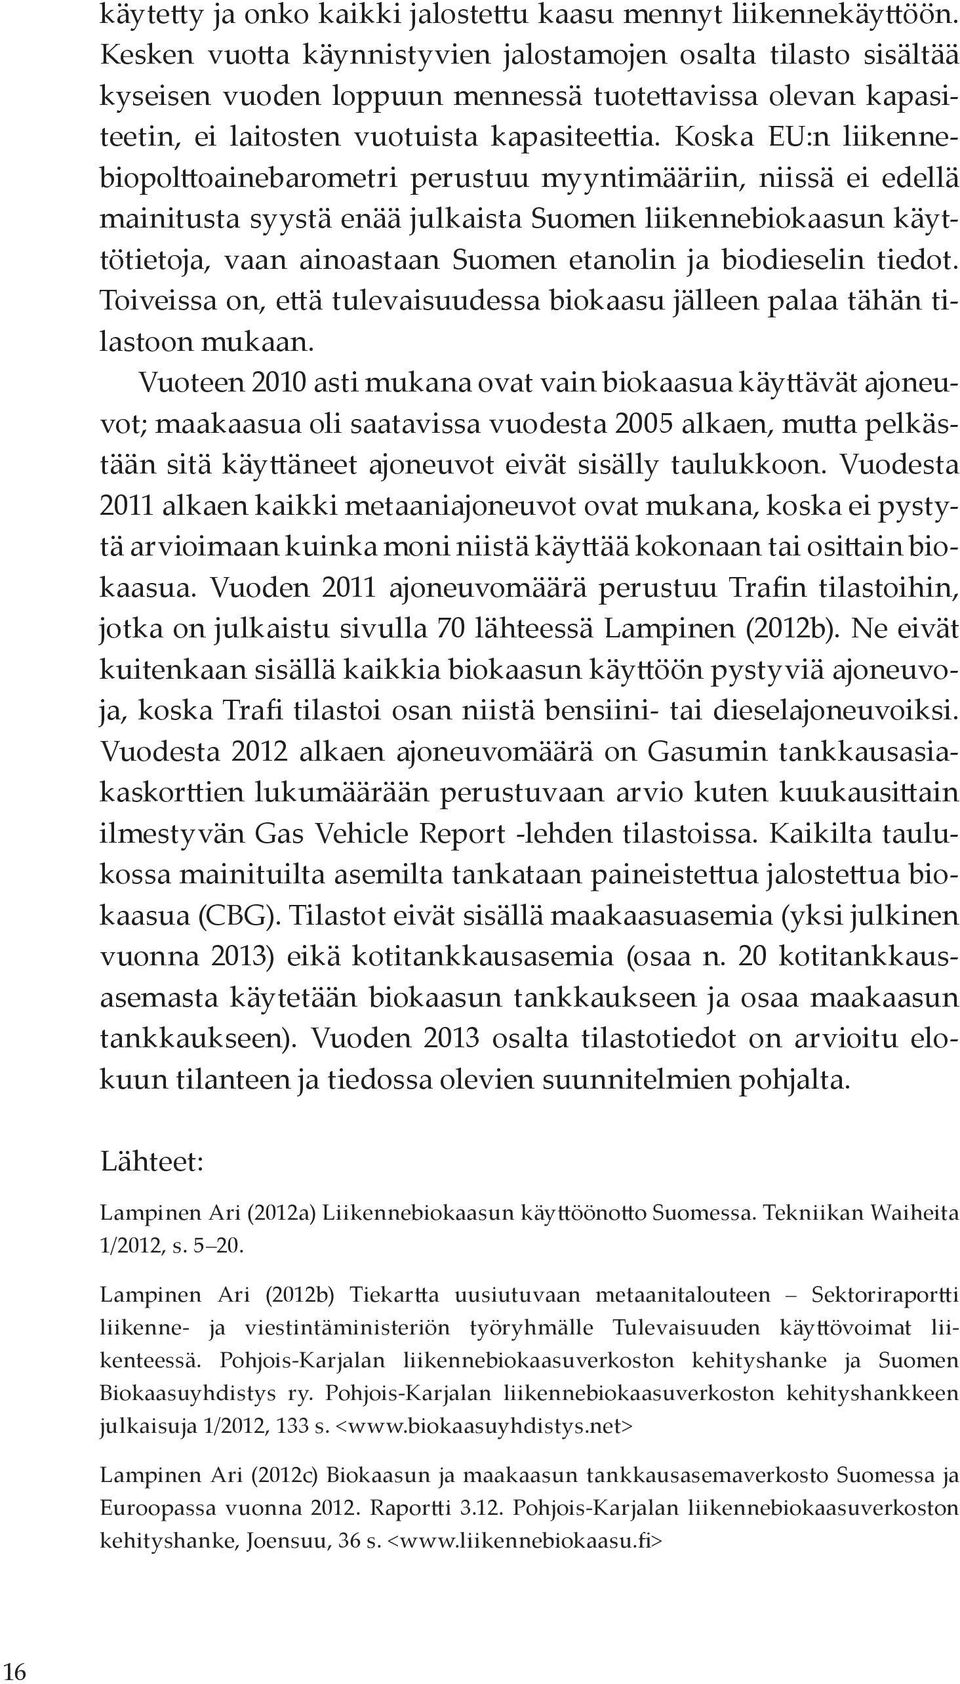 Koska EU:n liikennebiopolttoainebarometri perustuu myyntimääriin, niissä ei edellä mainitusta syystä enää julkaista Suomen liikennebiokaasun käyttötietoja, vaan ainoastaan Suomen etanolin ja